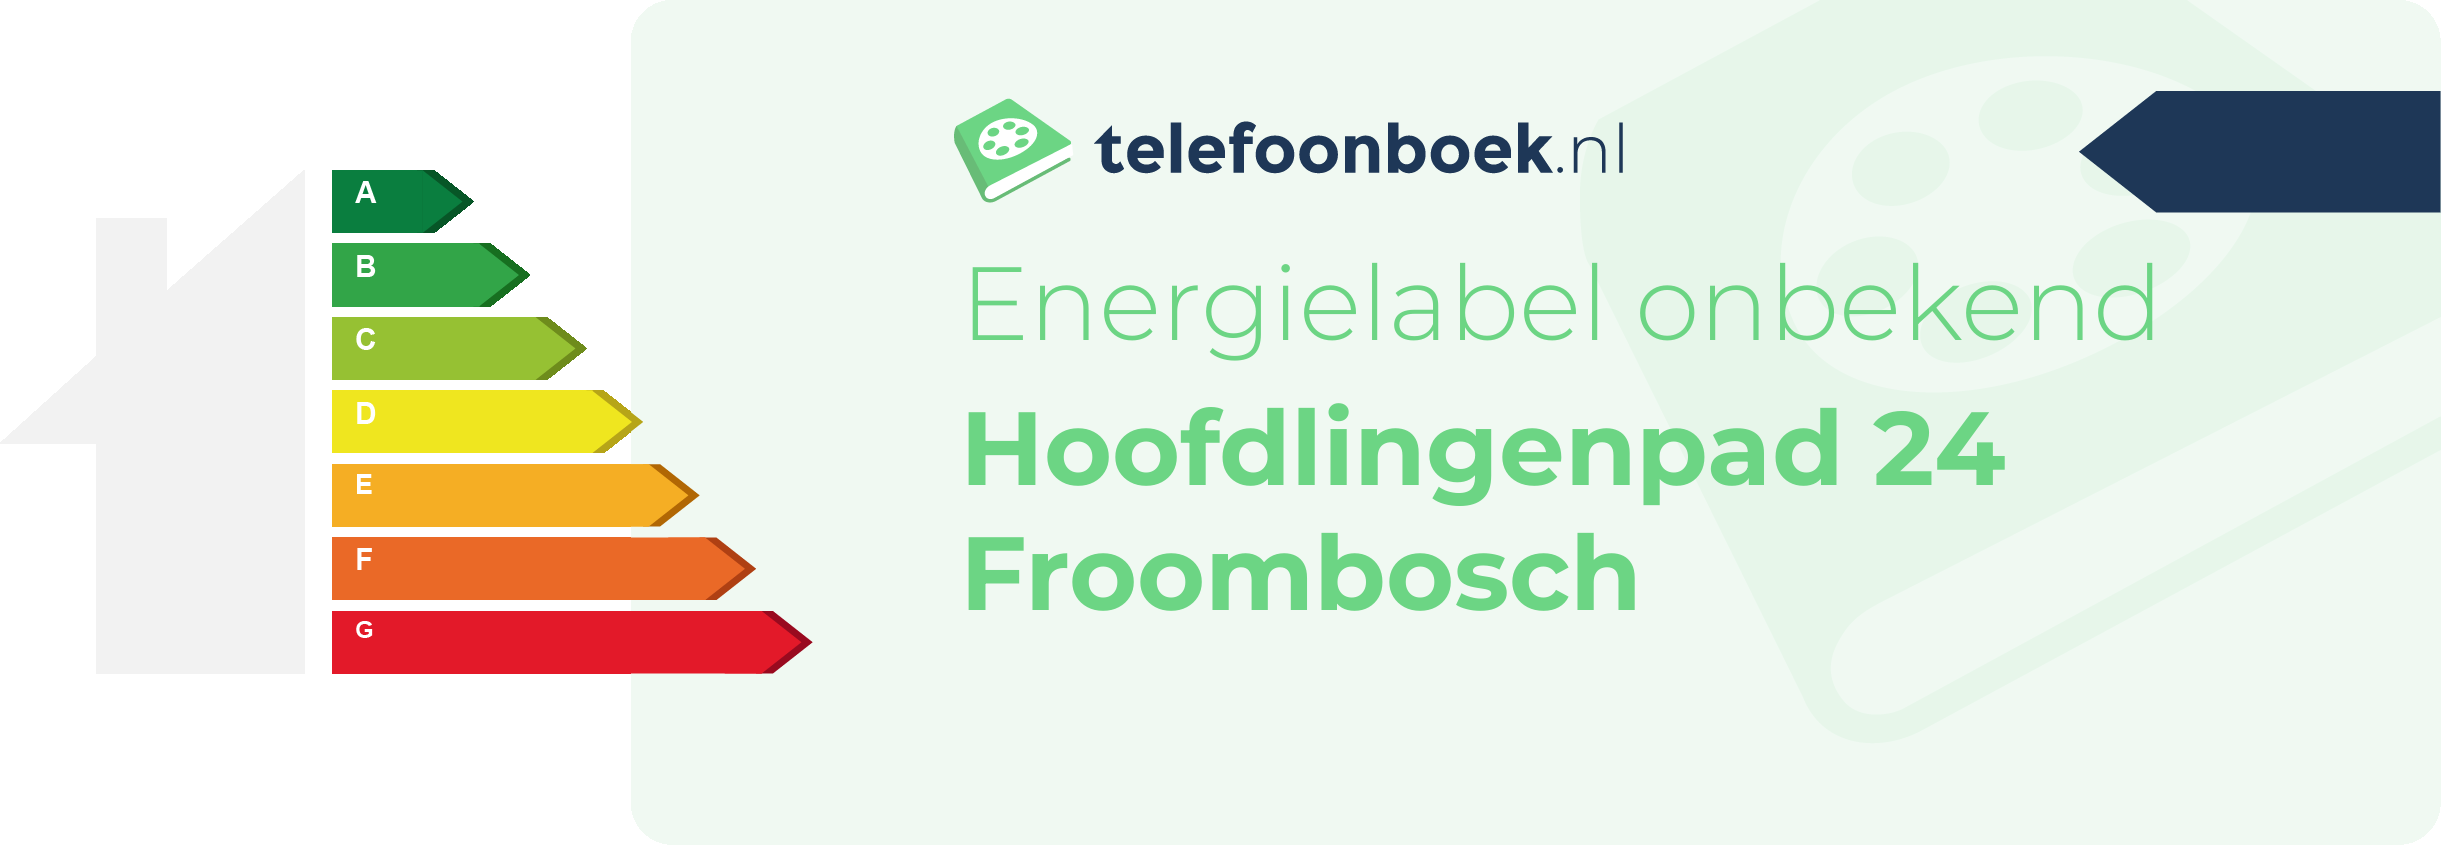 Energielabel Hoofdlingenpad 24 Froombosch